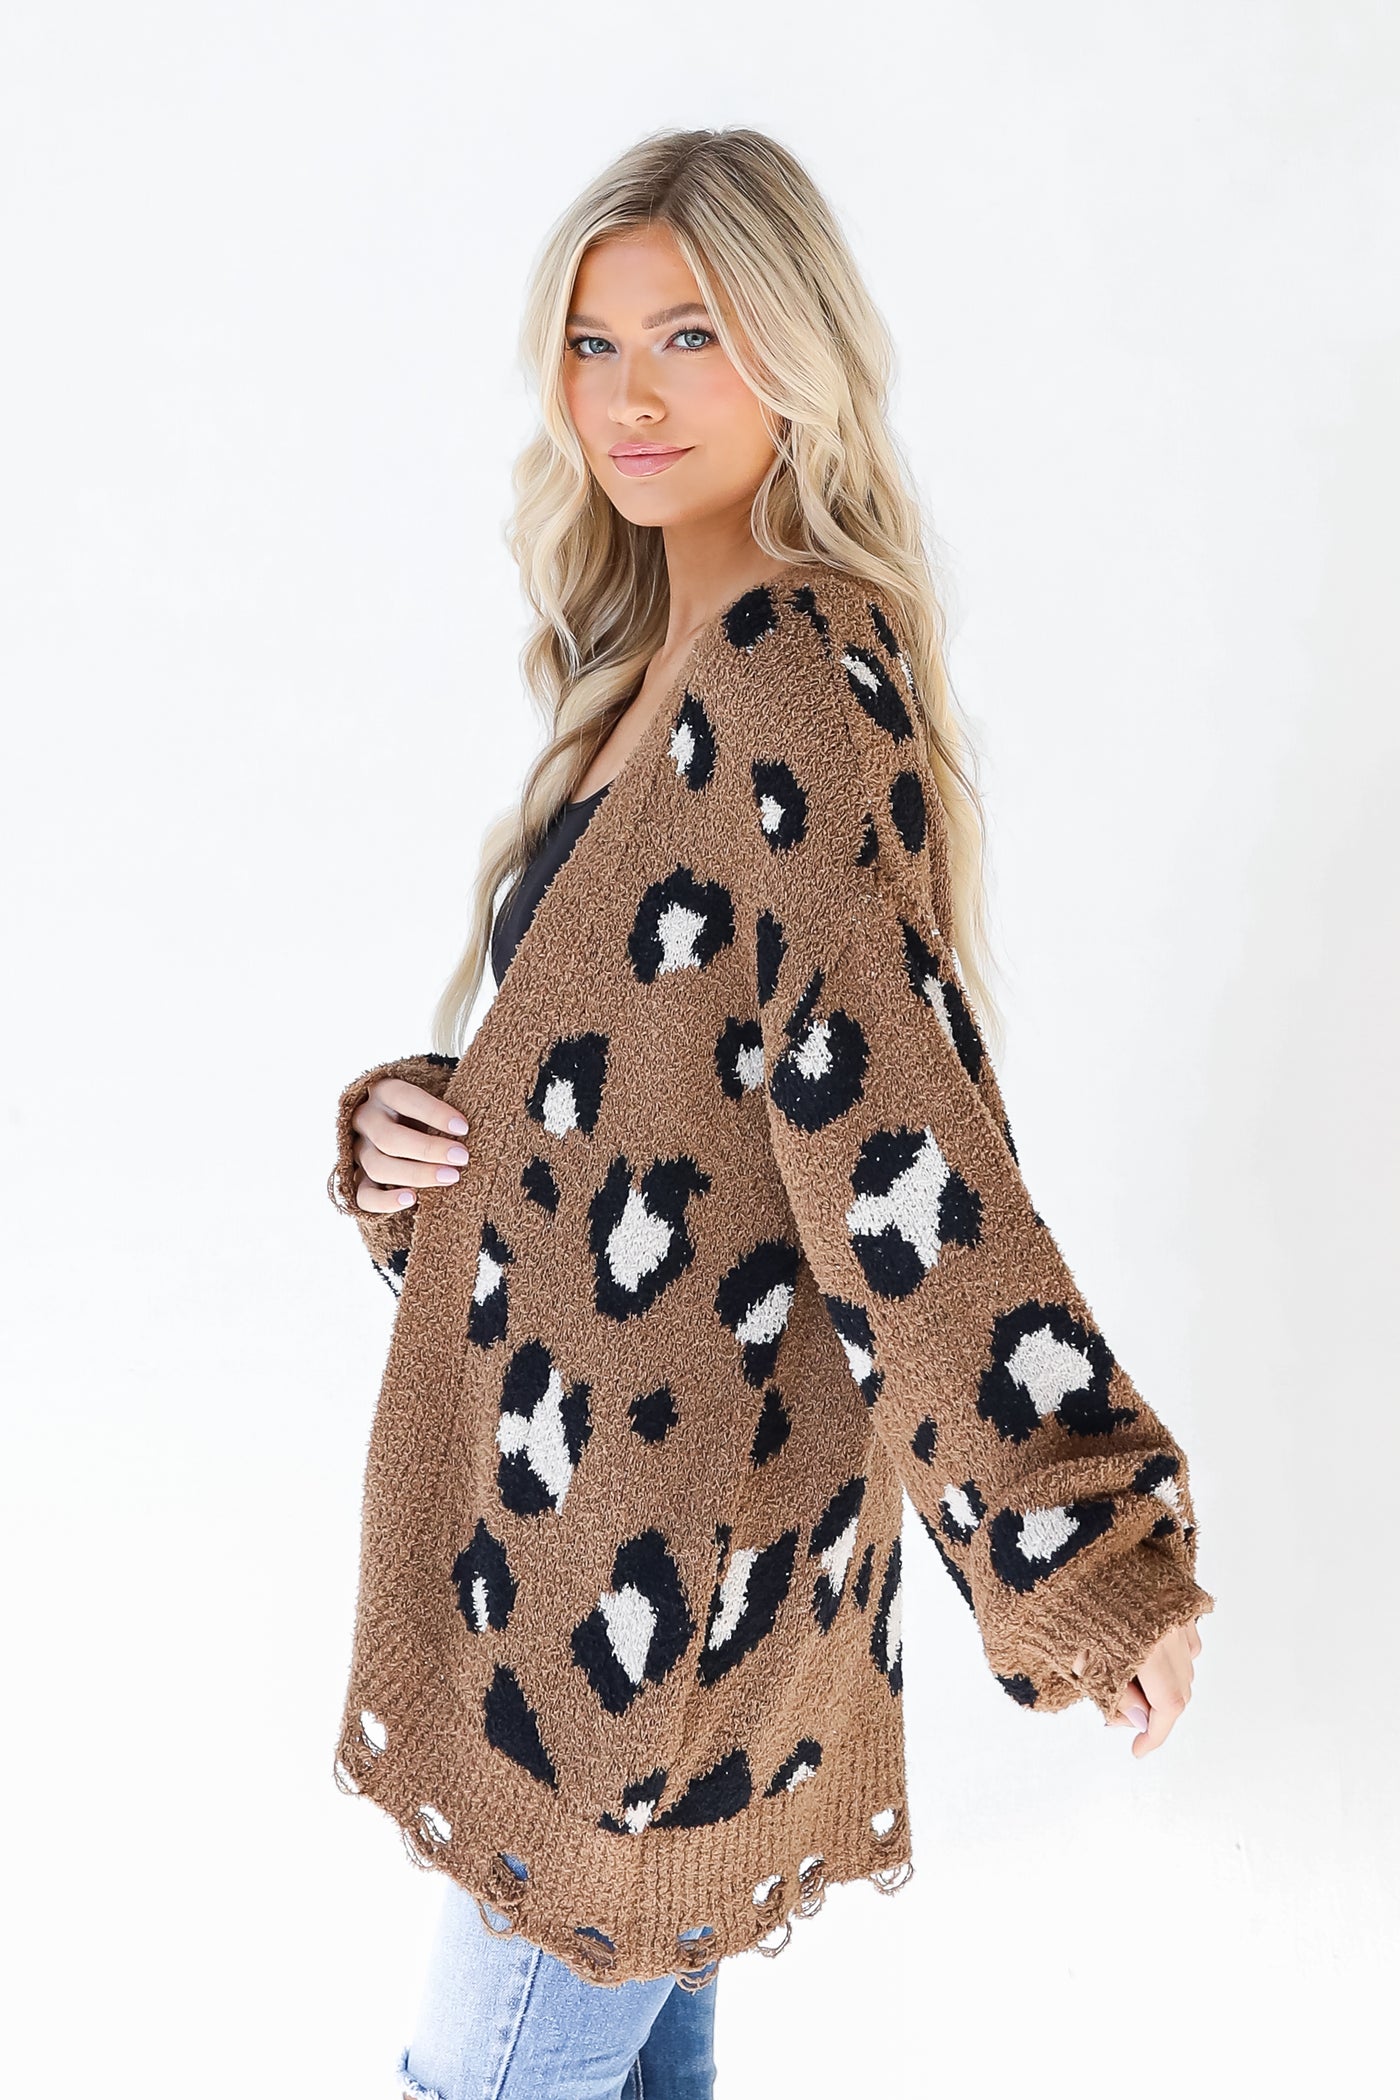 Leopard Sweater Cardigan in mocha side view